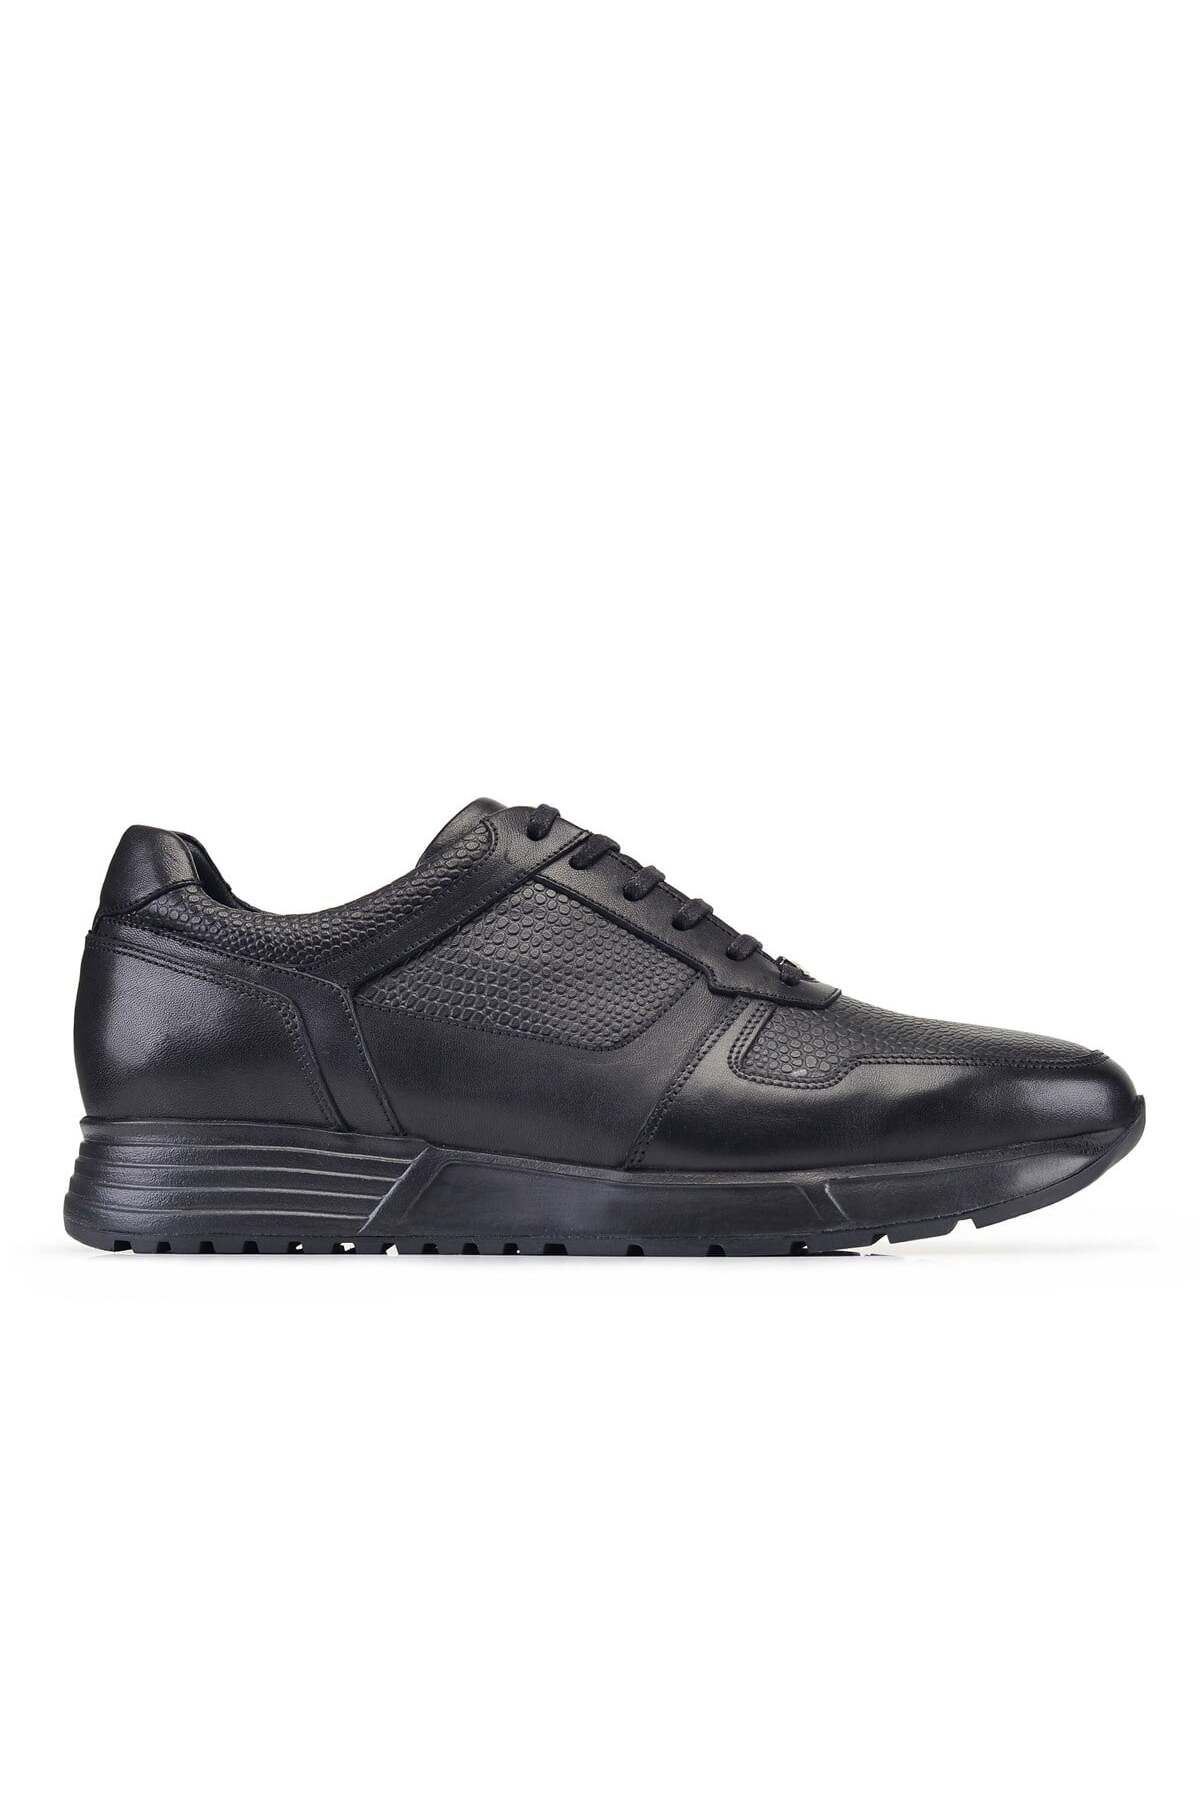 Nevzat Onay Siyah Bağcıklı Sneaker Erkek Ayakkabı -29481-